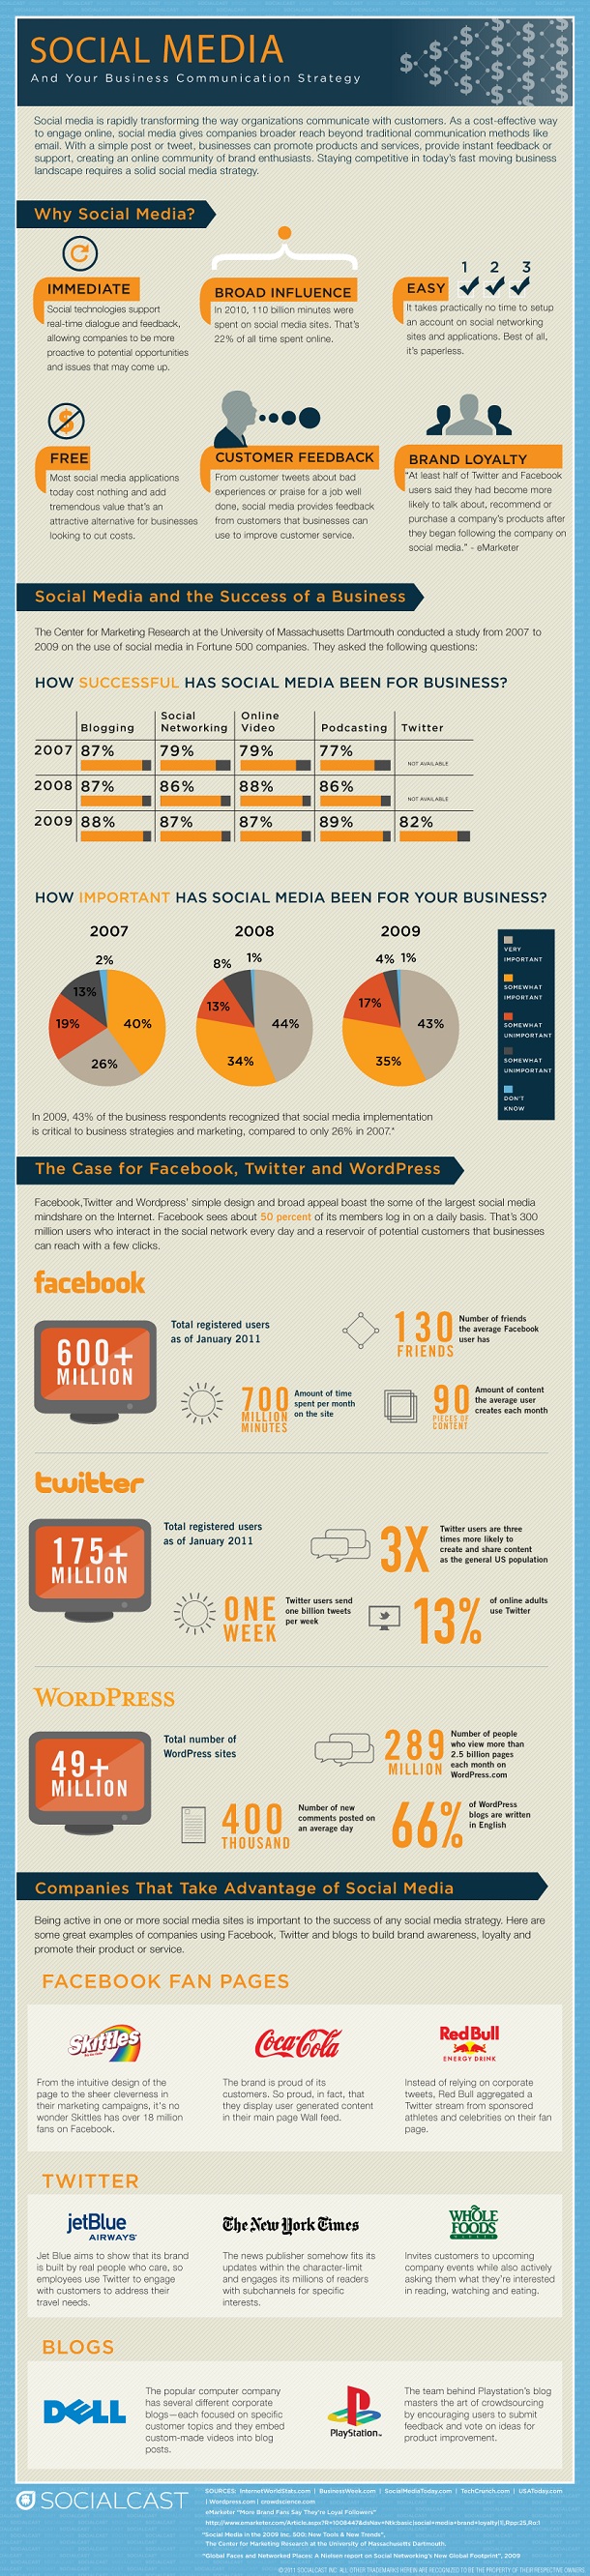 L'impact des réseaux sociaux sur votre business